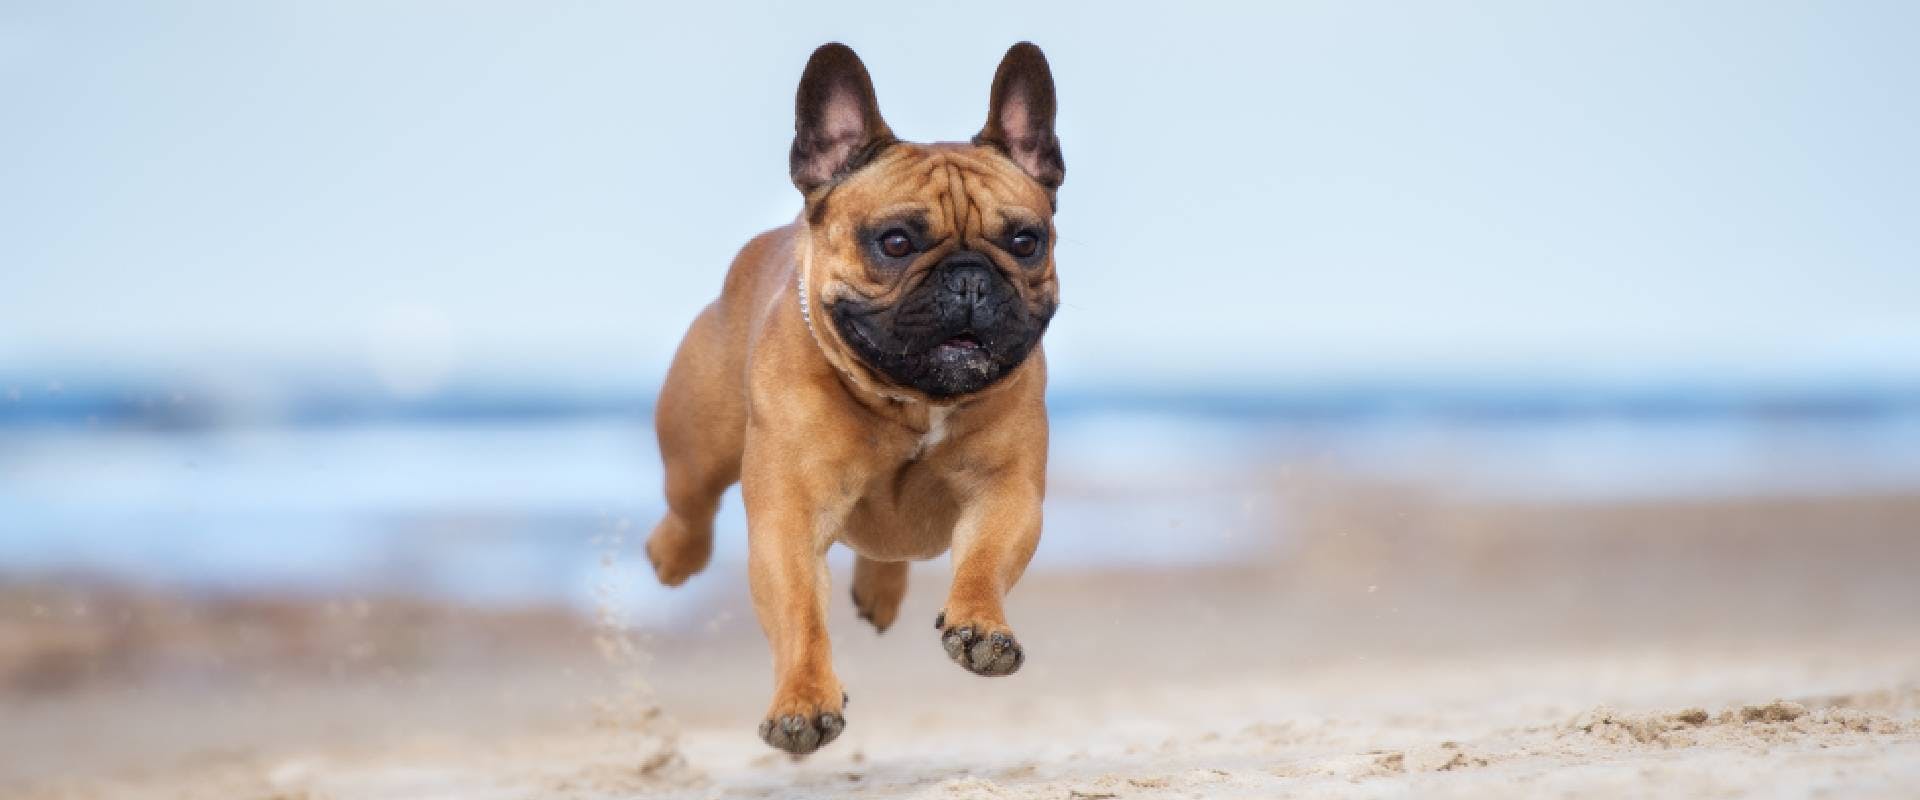 French Bulldog running along the beach